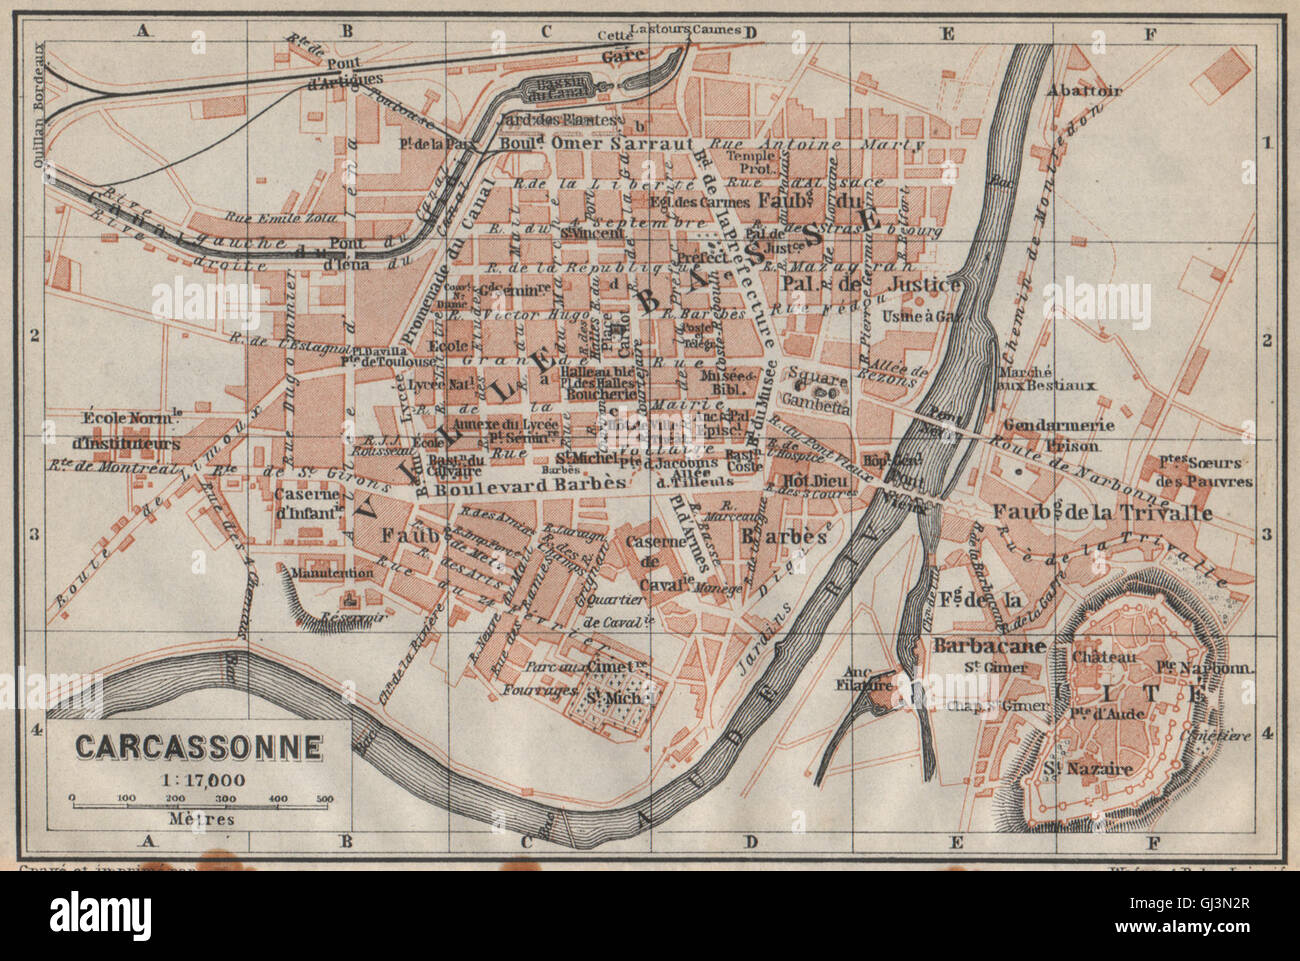 CARCASSONNE town city plan de la ville. Aude. Ville Basse & Cité carte, 1914  map Stock Photo - Alamy